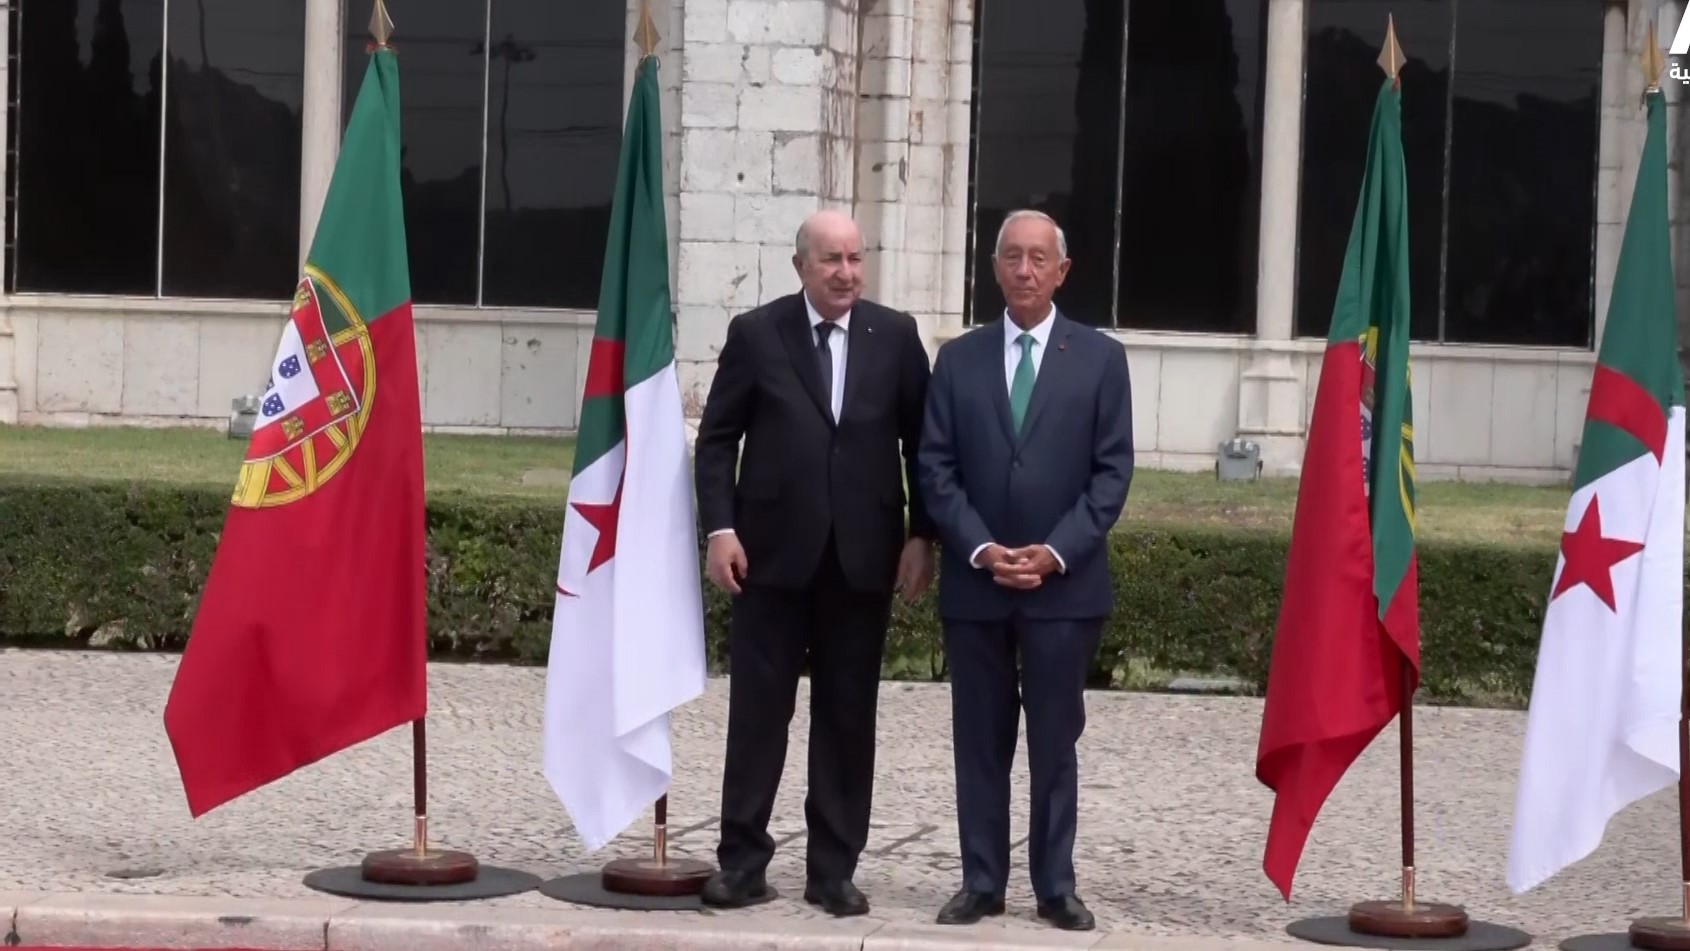 Tebboune de retour en Algérie après une visite d’état au Portugal